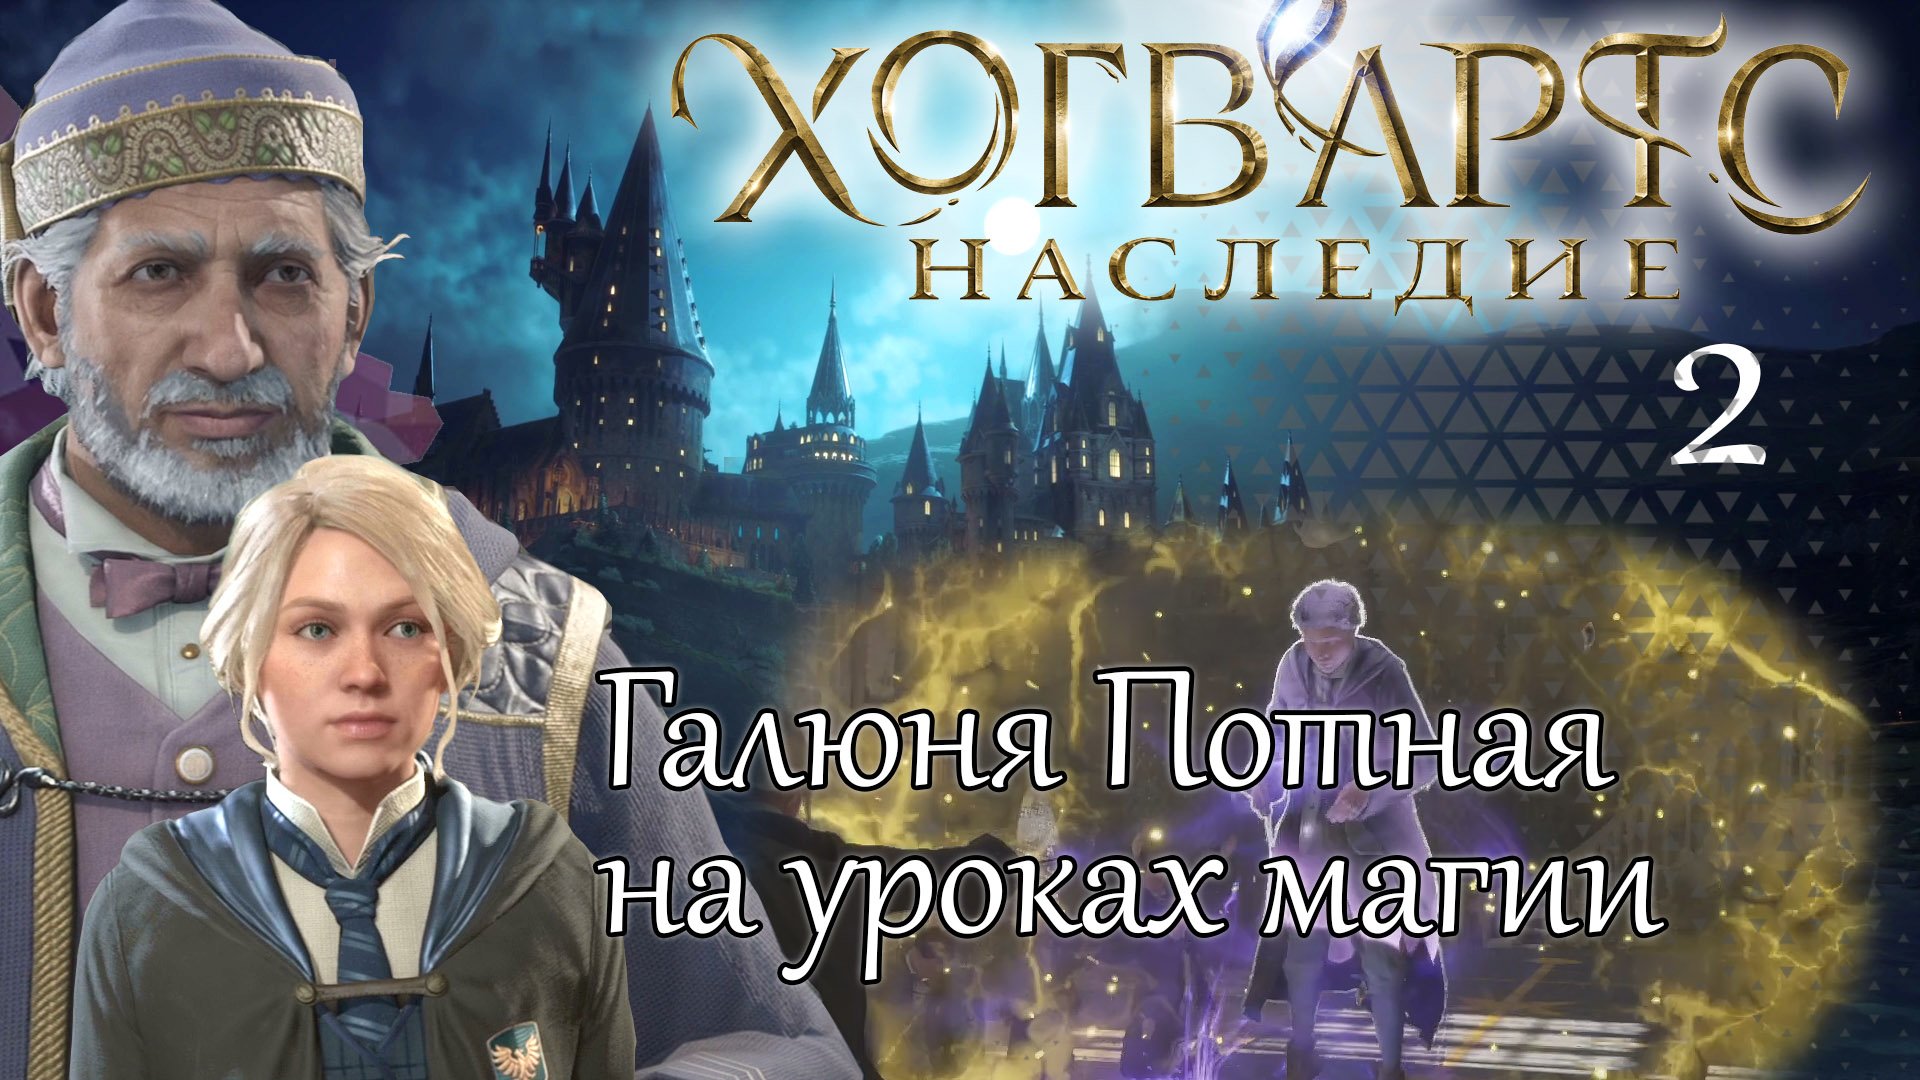 ГАЛЮНЯ ПОТНАЯ НА УРОКАХ МАГИИ ХОГВАРТС НАСЛЕДИЕ➤ Часть 2 ➤ Hogwarts Legacy проходим на русском